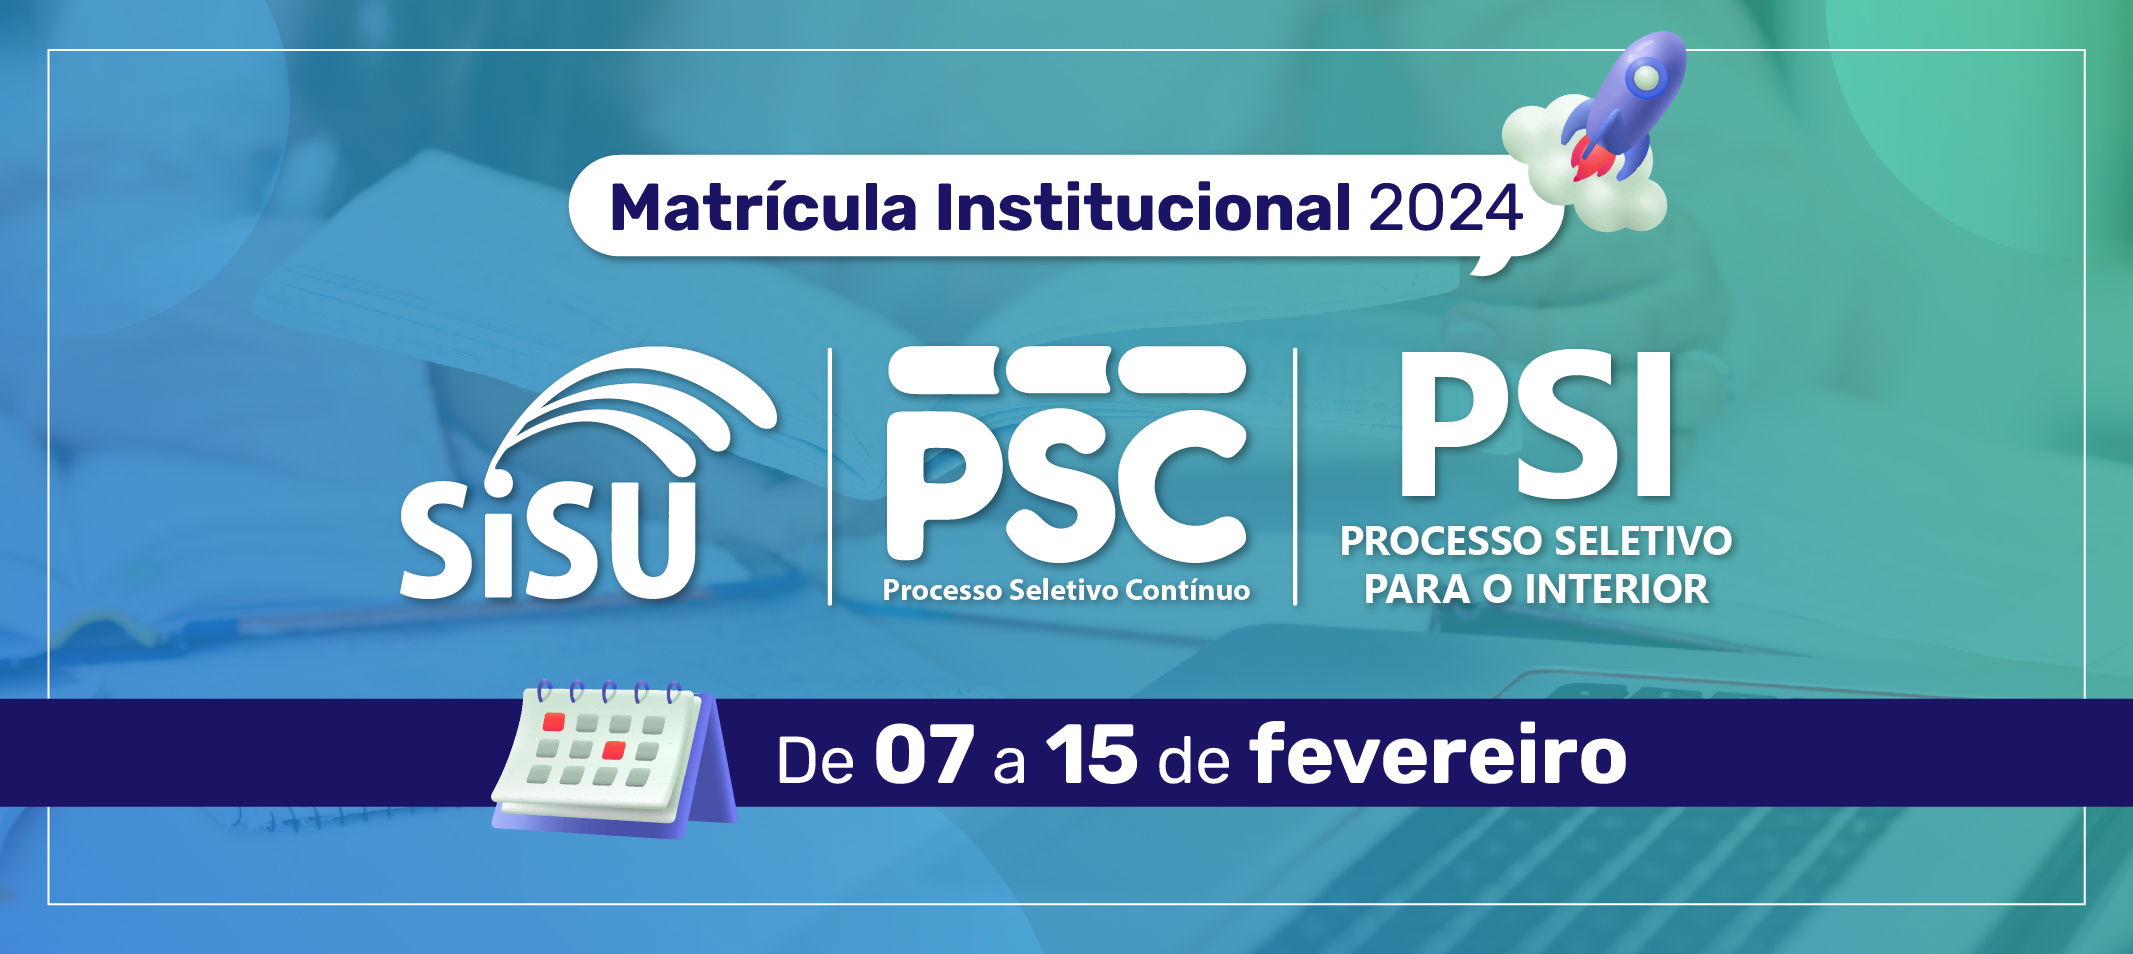 Ufam divulga editais de matrícula PSC, PSI e SISU 1°/2024